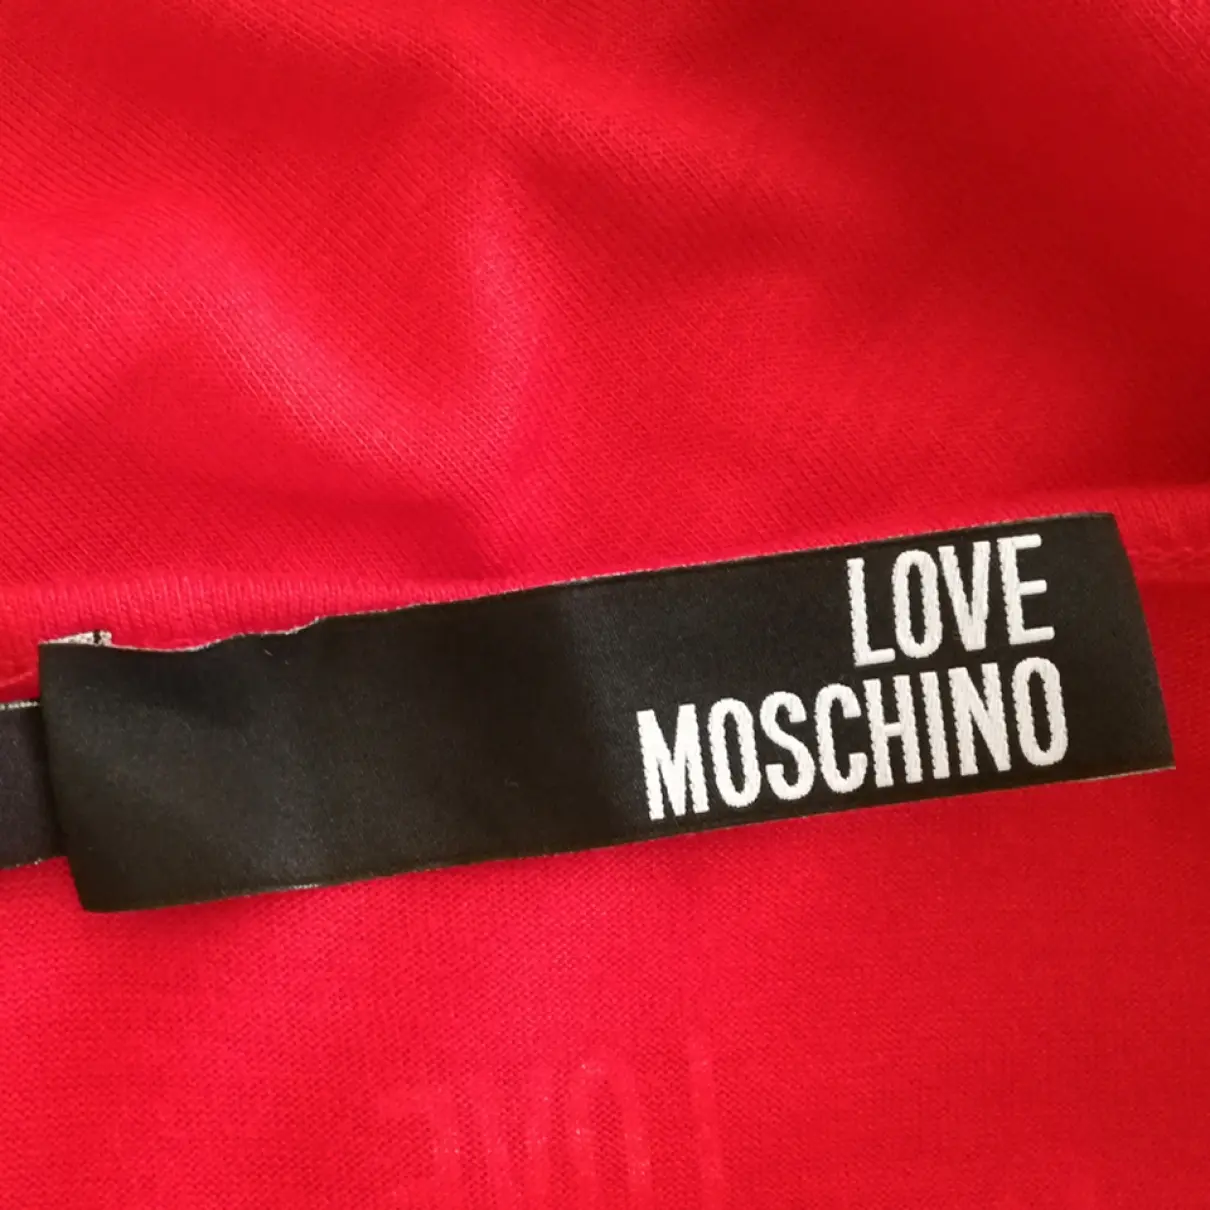 Tunic Moschino Love